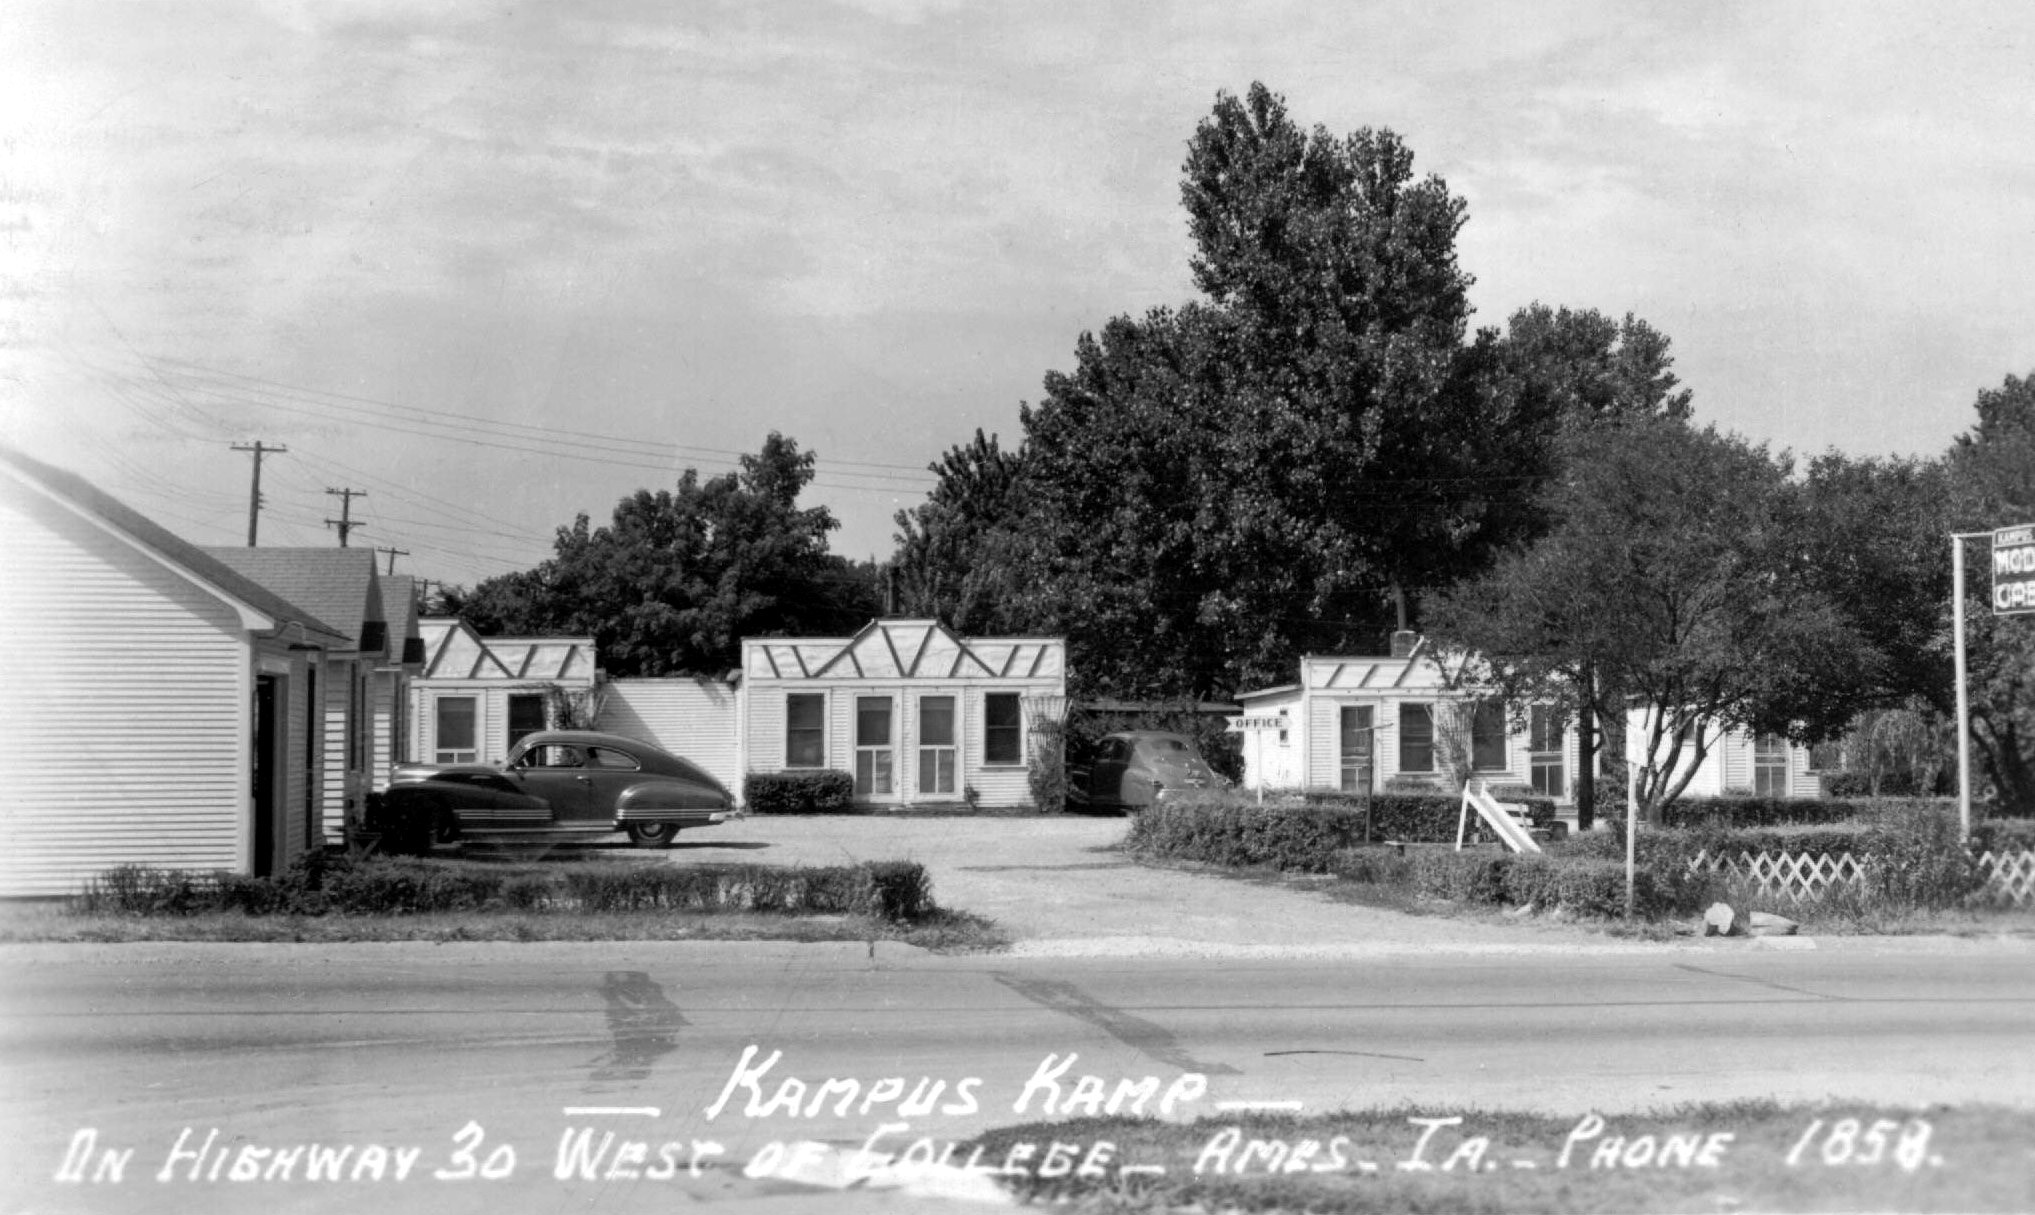 04_1949_kampus_kamp_photo.jpg